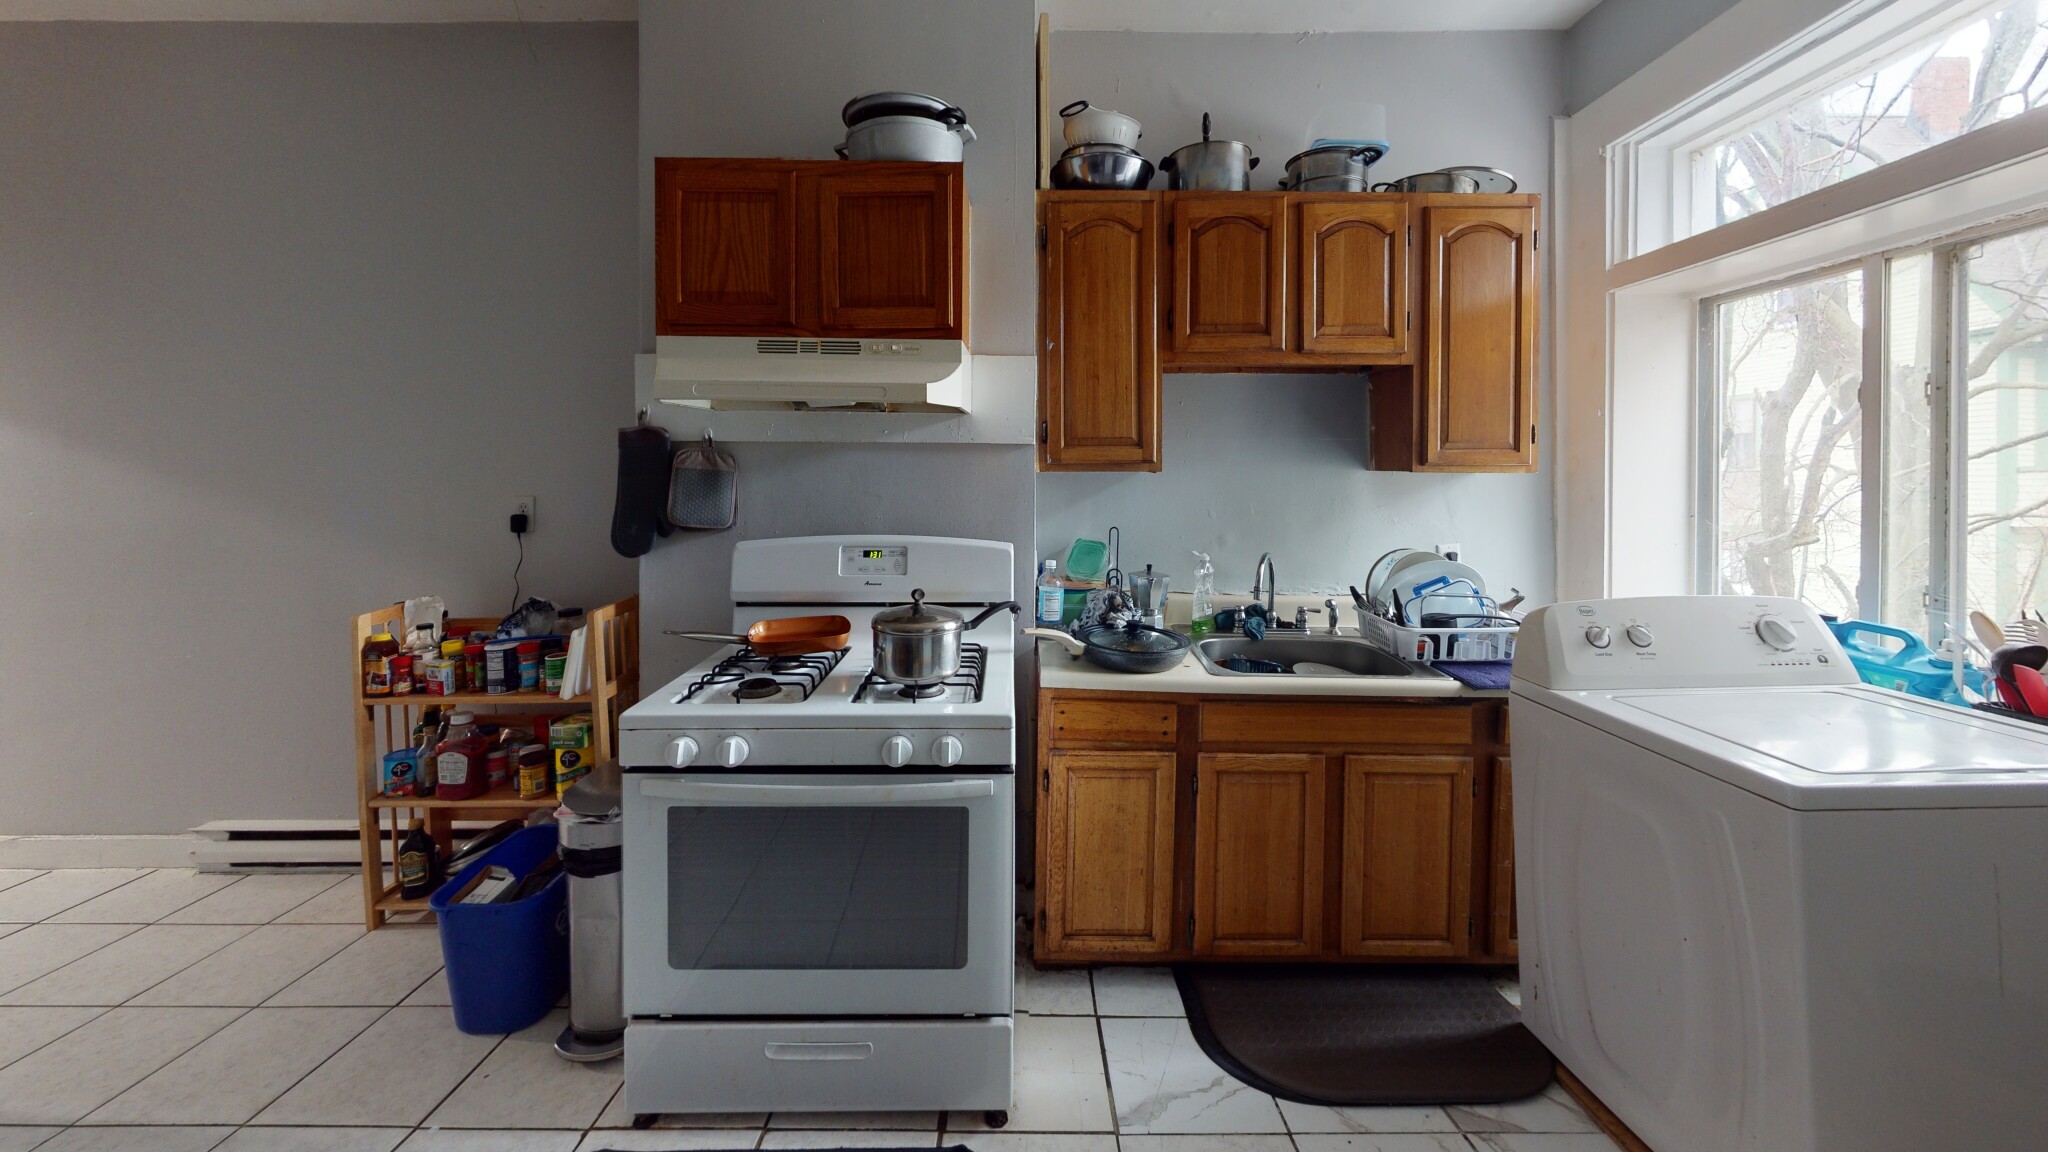 Photos of apartment on Montebello Rd.,Boston MA 02130